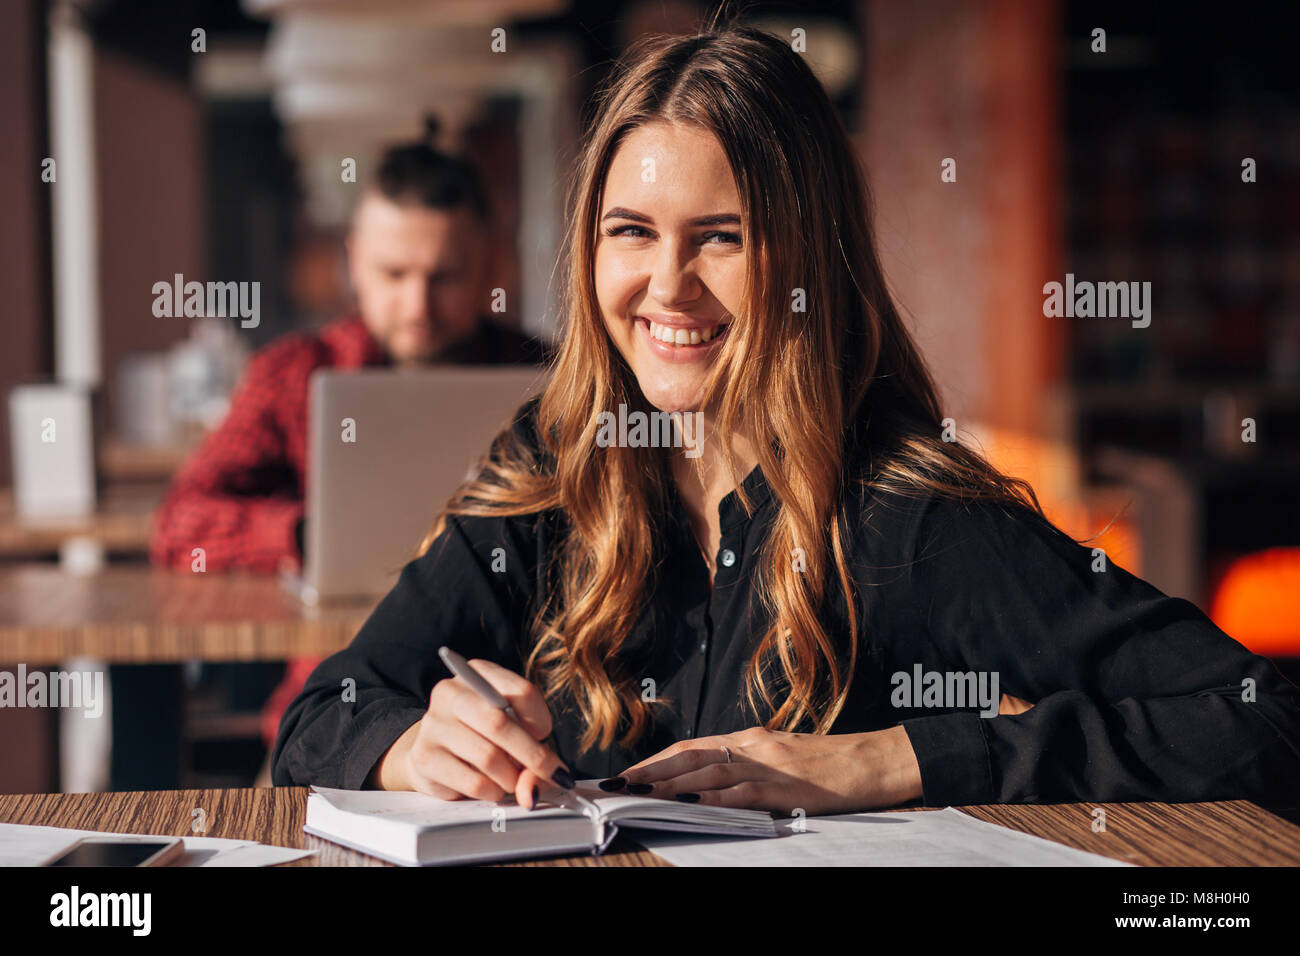 Portrait d'une femme confiante en prenant des notes dans un bloc-notes tout en étant assis à table dans un café à l'intérieur et looking at camera Banque D'Images